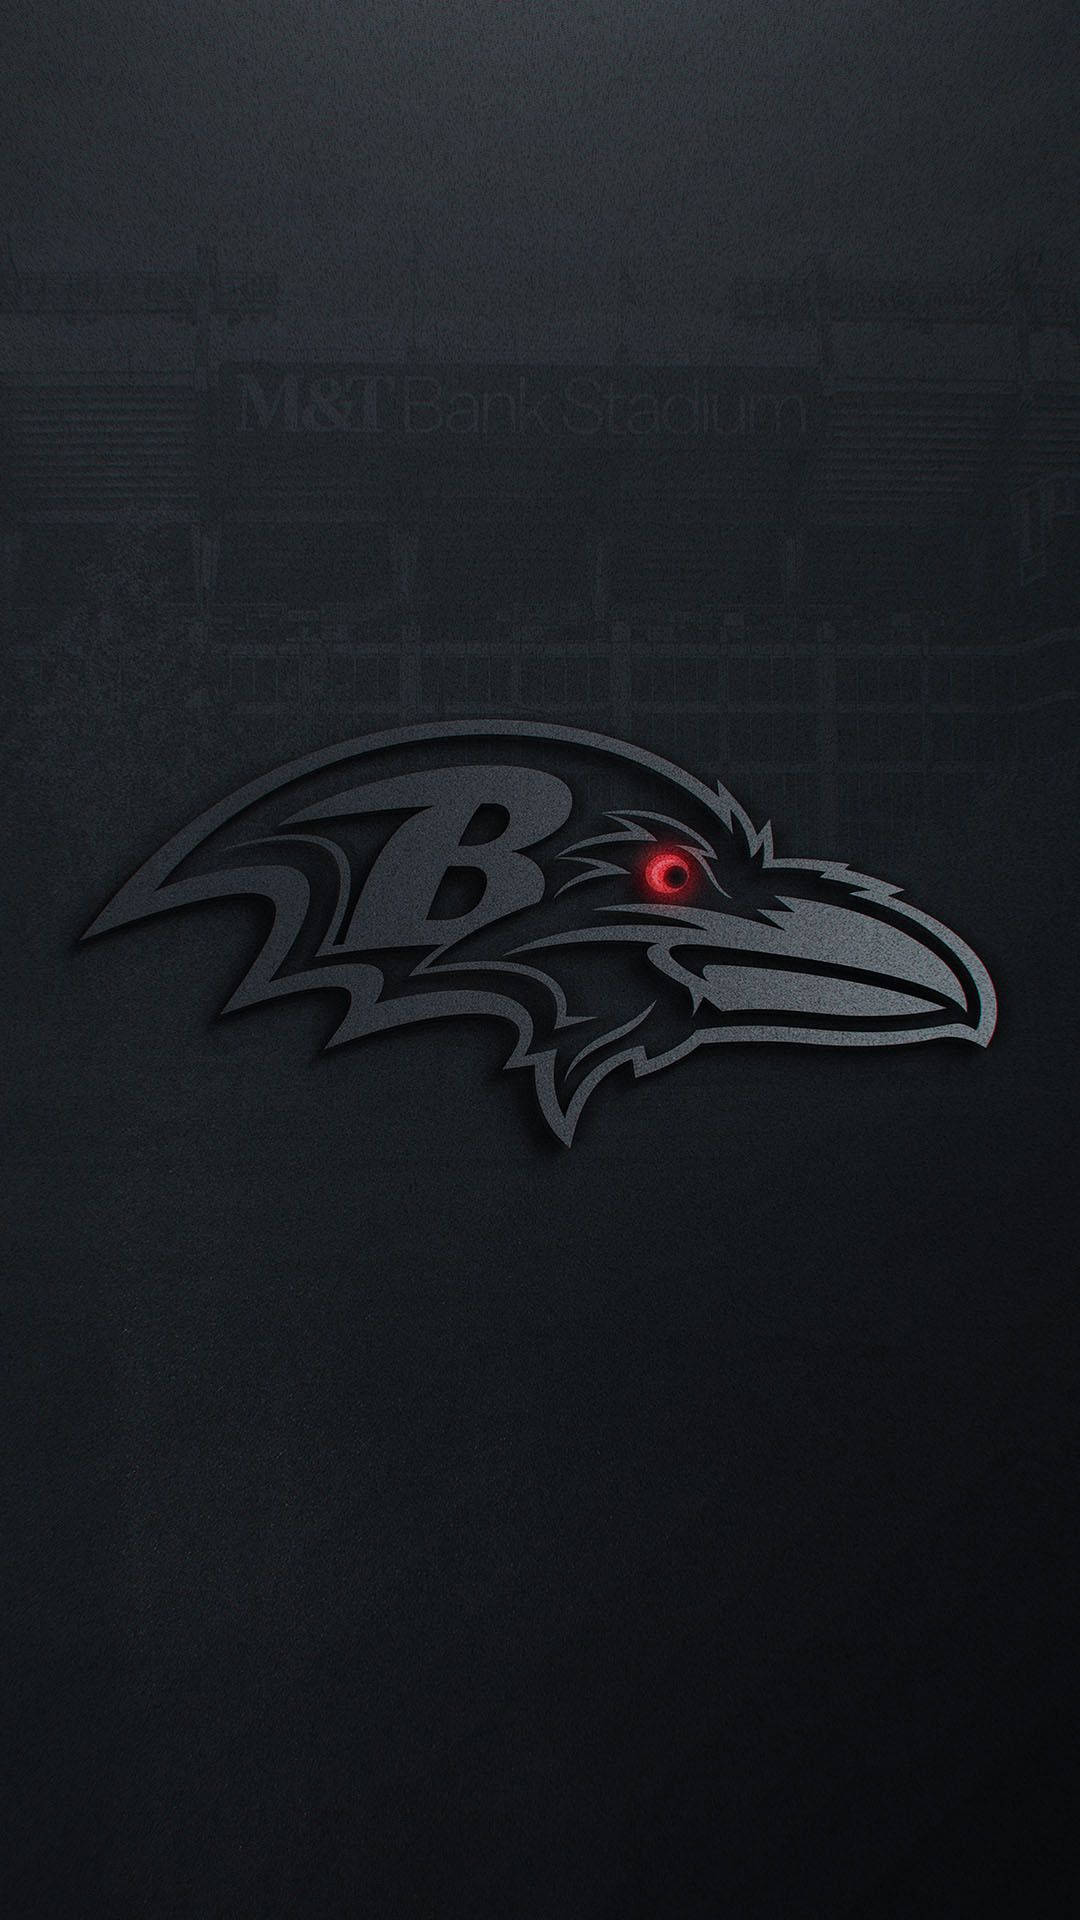 Baltimore Ravens Black Iphone Wallpaper